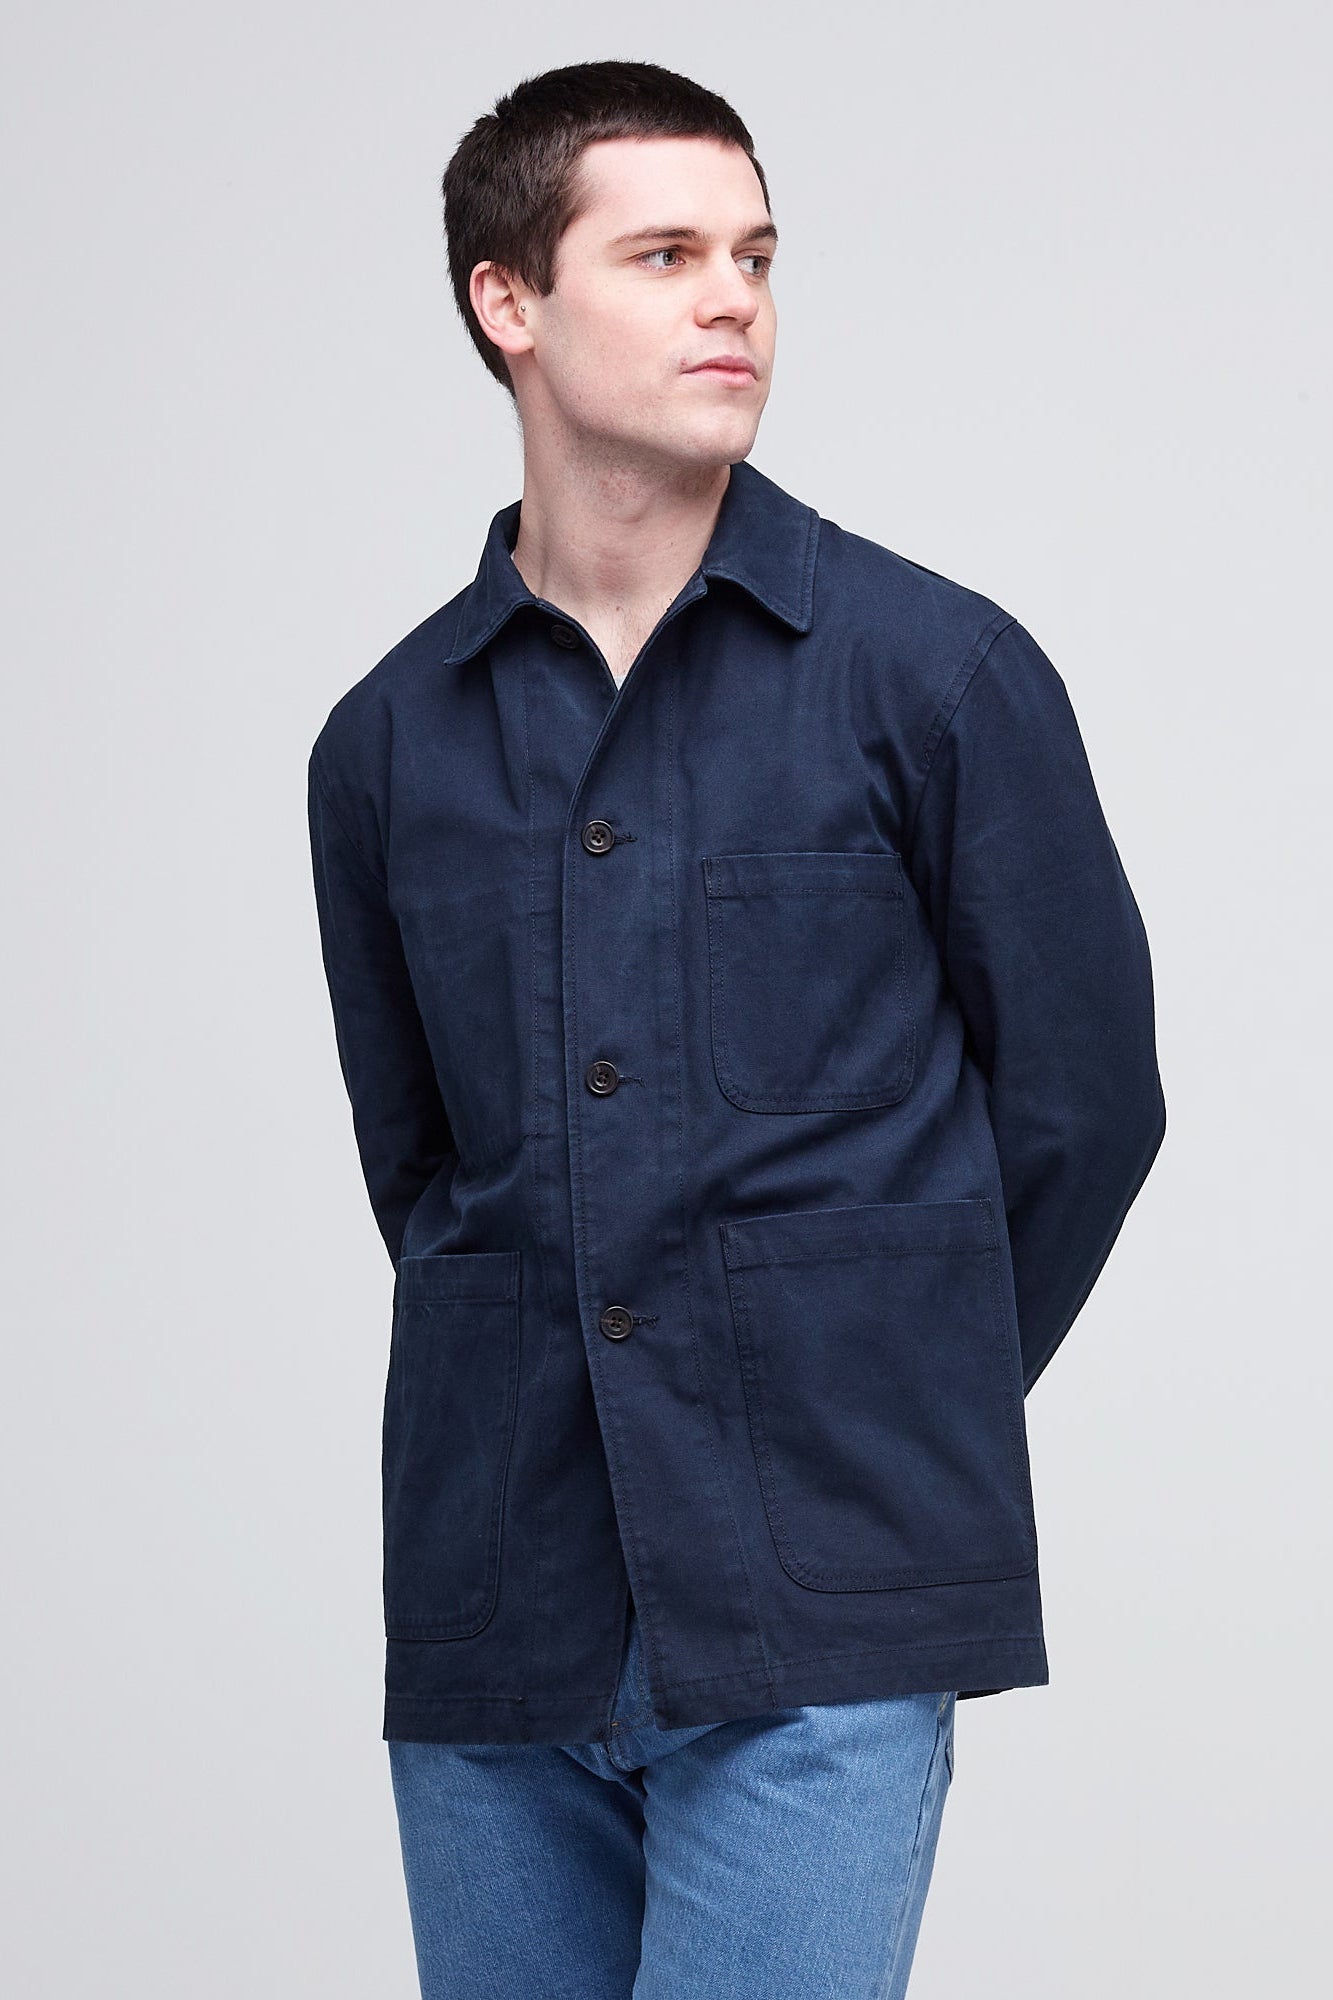 Men's Chore Jacket - Dark Navy - Community Clothing